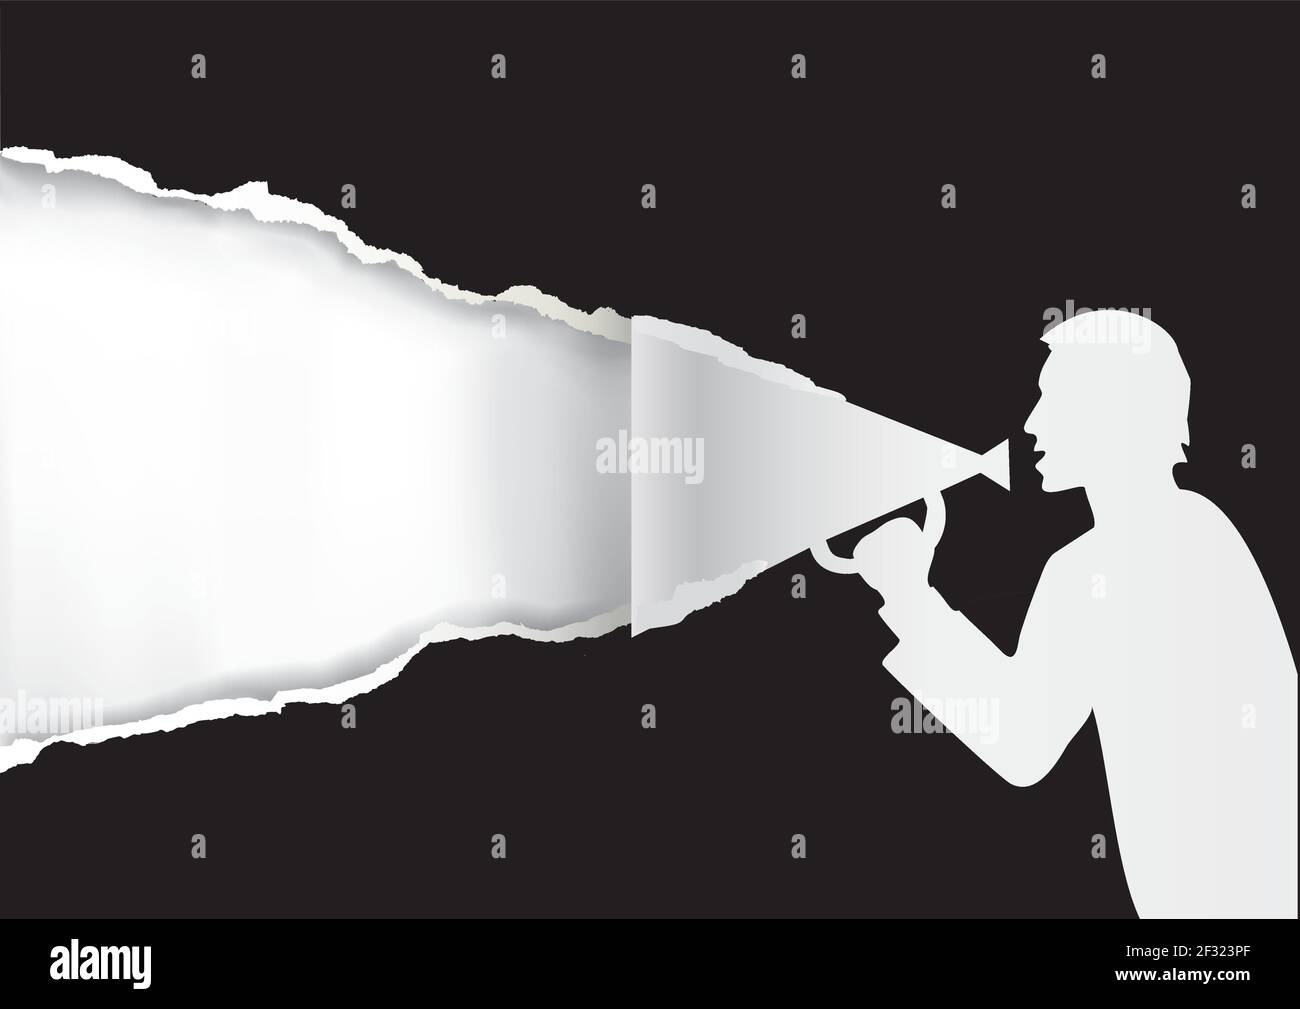 Uomo con megafono che strappa carta nera. Immagine dello sfondo di carta con silhouette maschio stilizzata. Modello per banner pubblicitari. Illustrazione Vettoriale